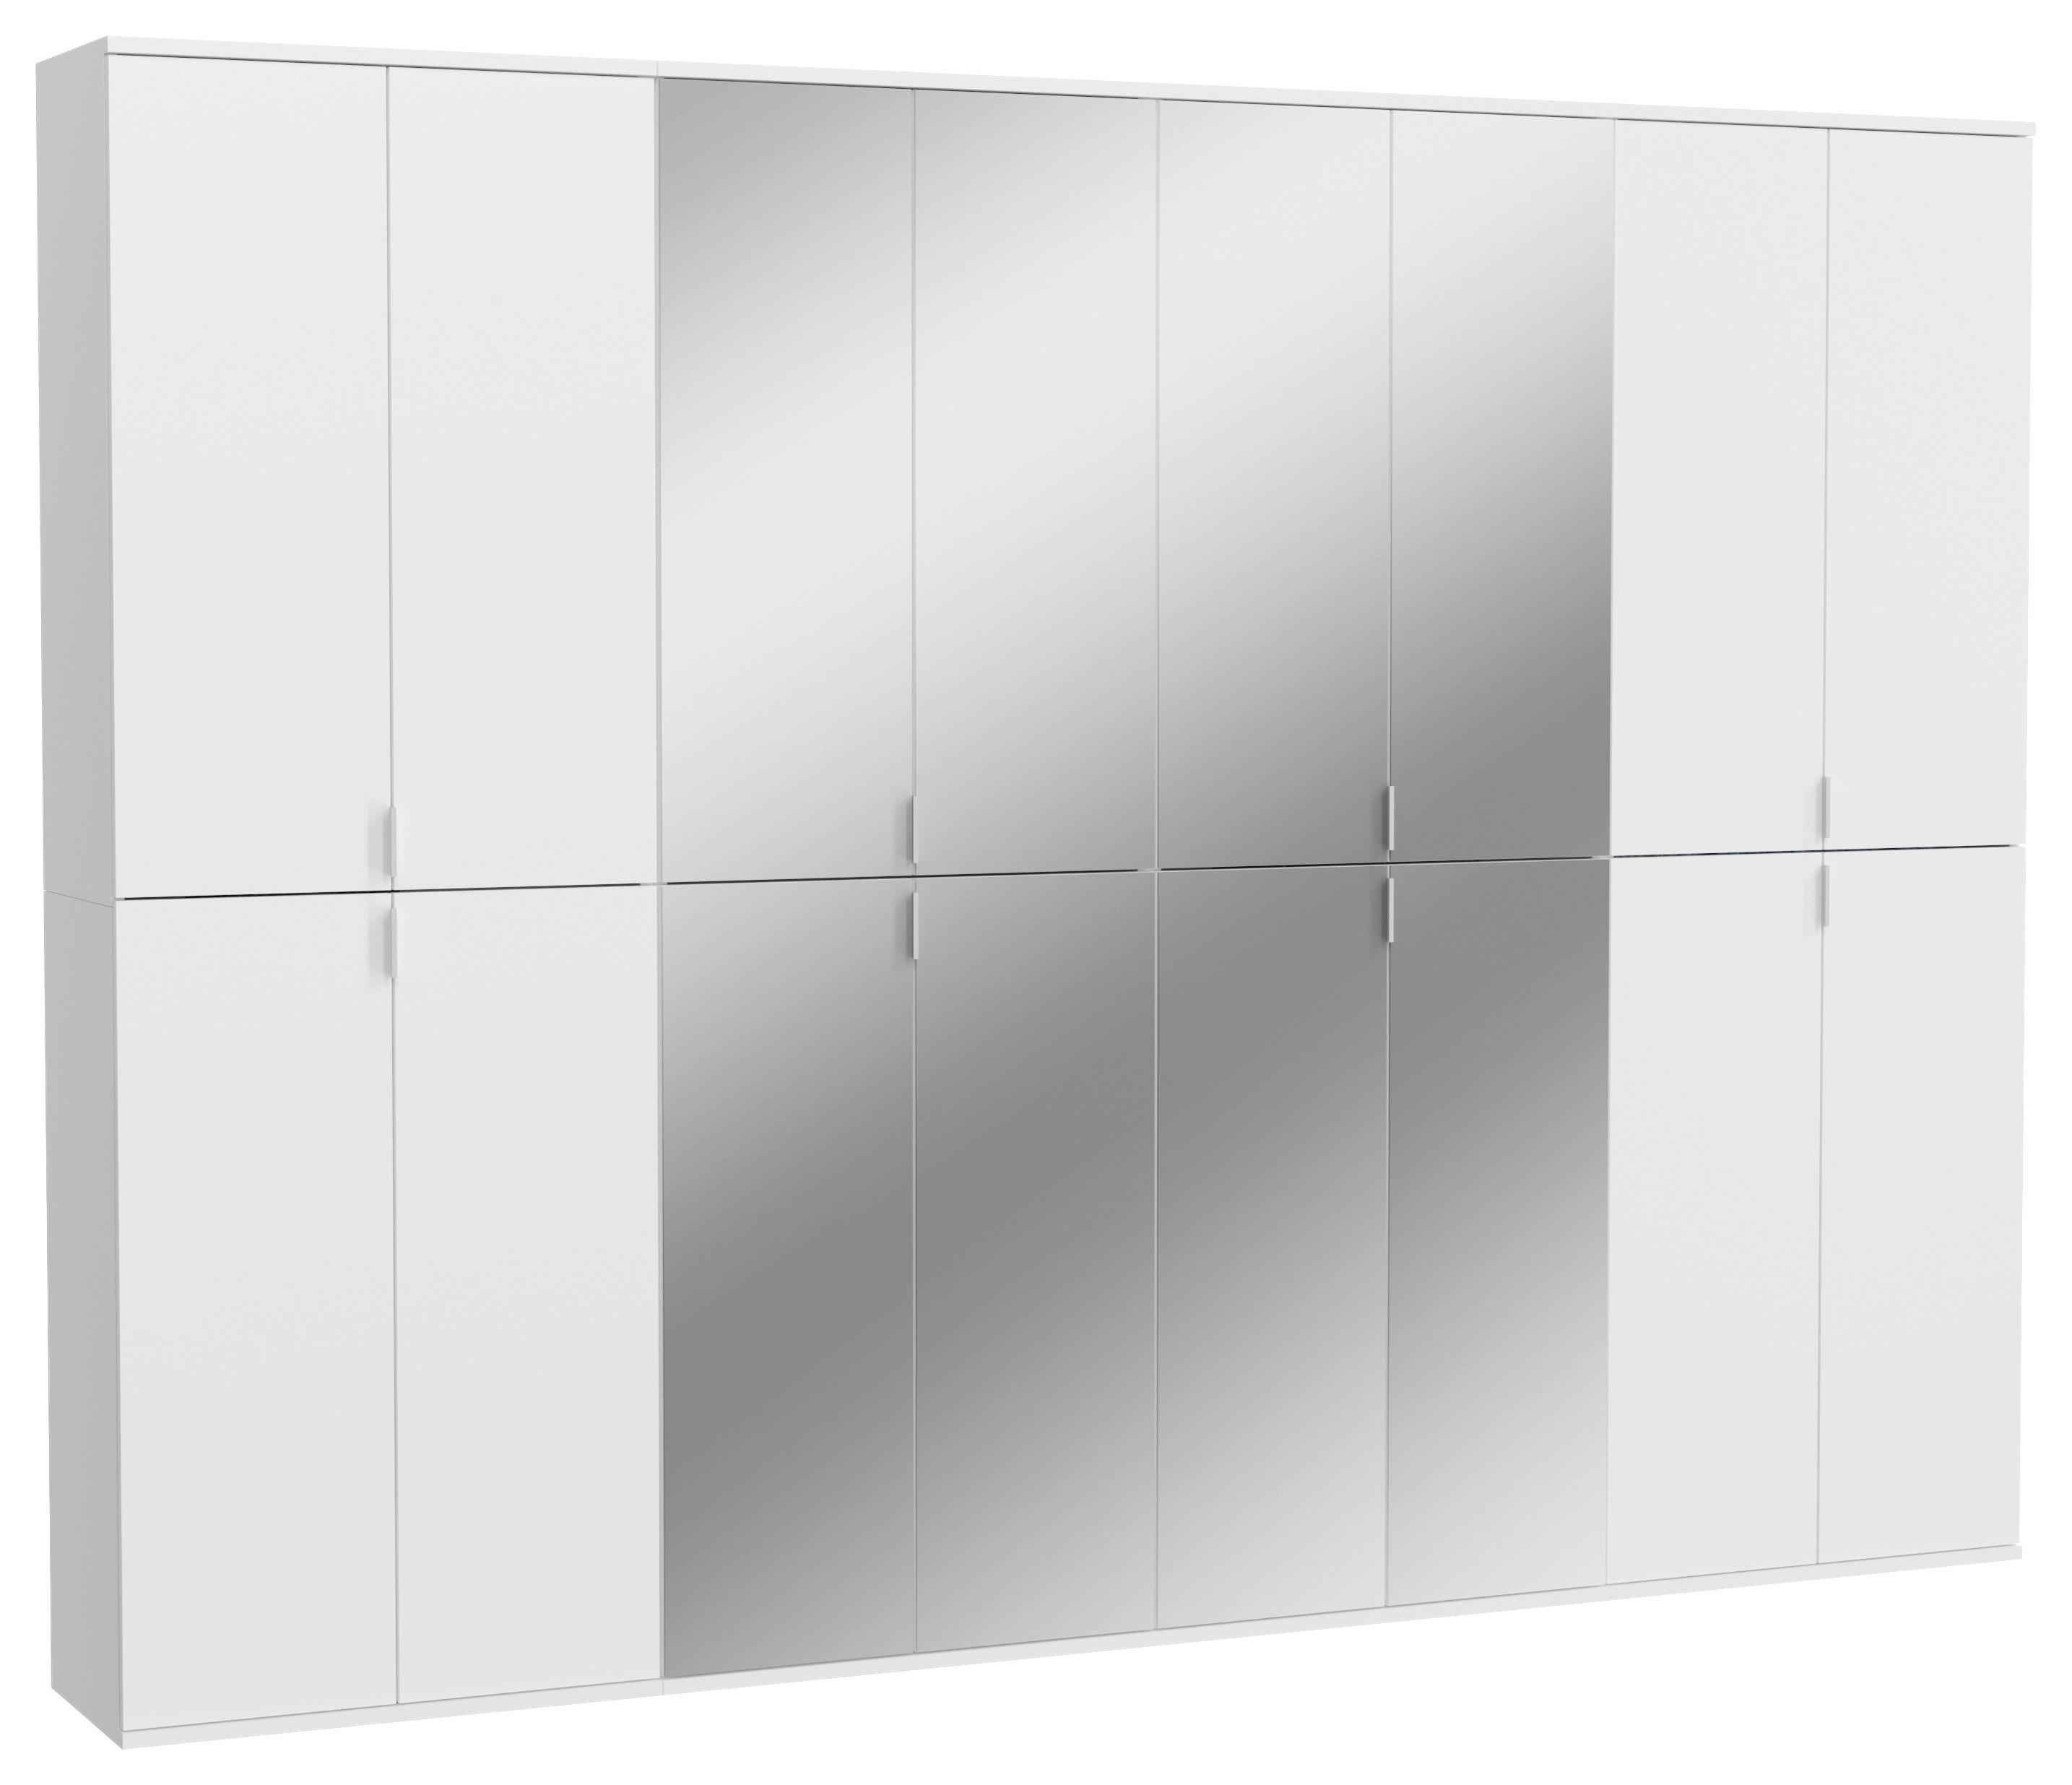 DREHTÜRENSCHRANK 16-türig Weiß  - Chromfarben/Weiß Hochglanz, MODERN, Glas/Holzwerkstoff (244/193/34cm) - MID.YOU